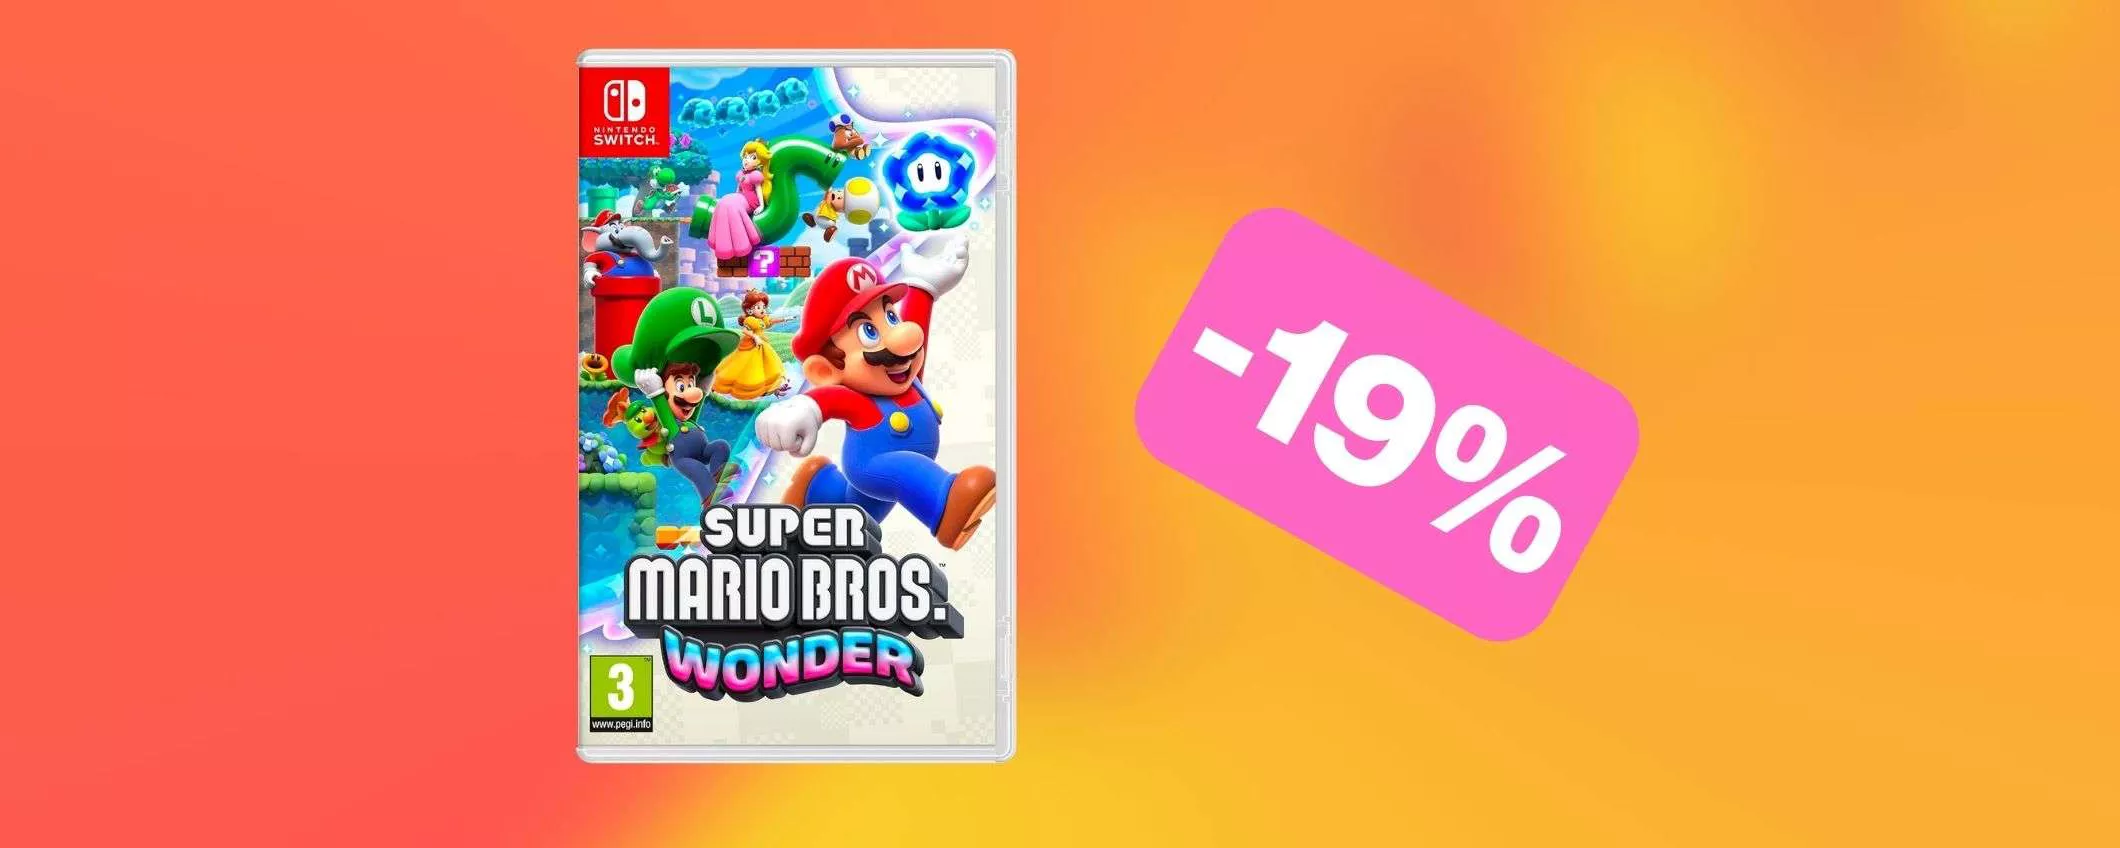 Il bellissimo Super Mario Bros. Wonder per Switch è in OFFERTA su Amazon (-19%)